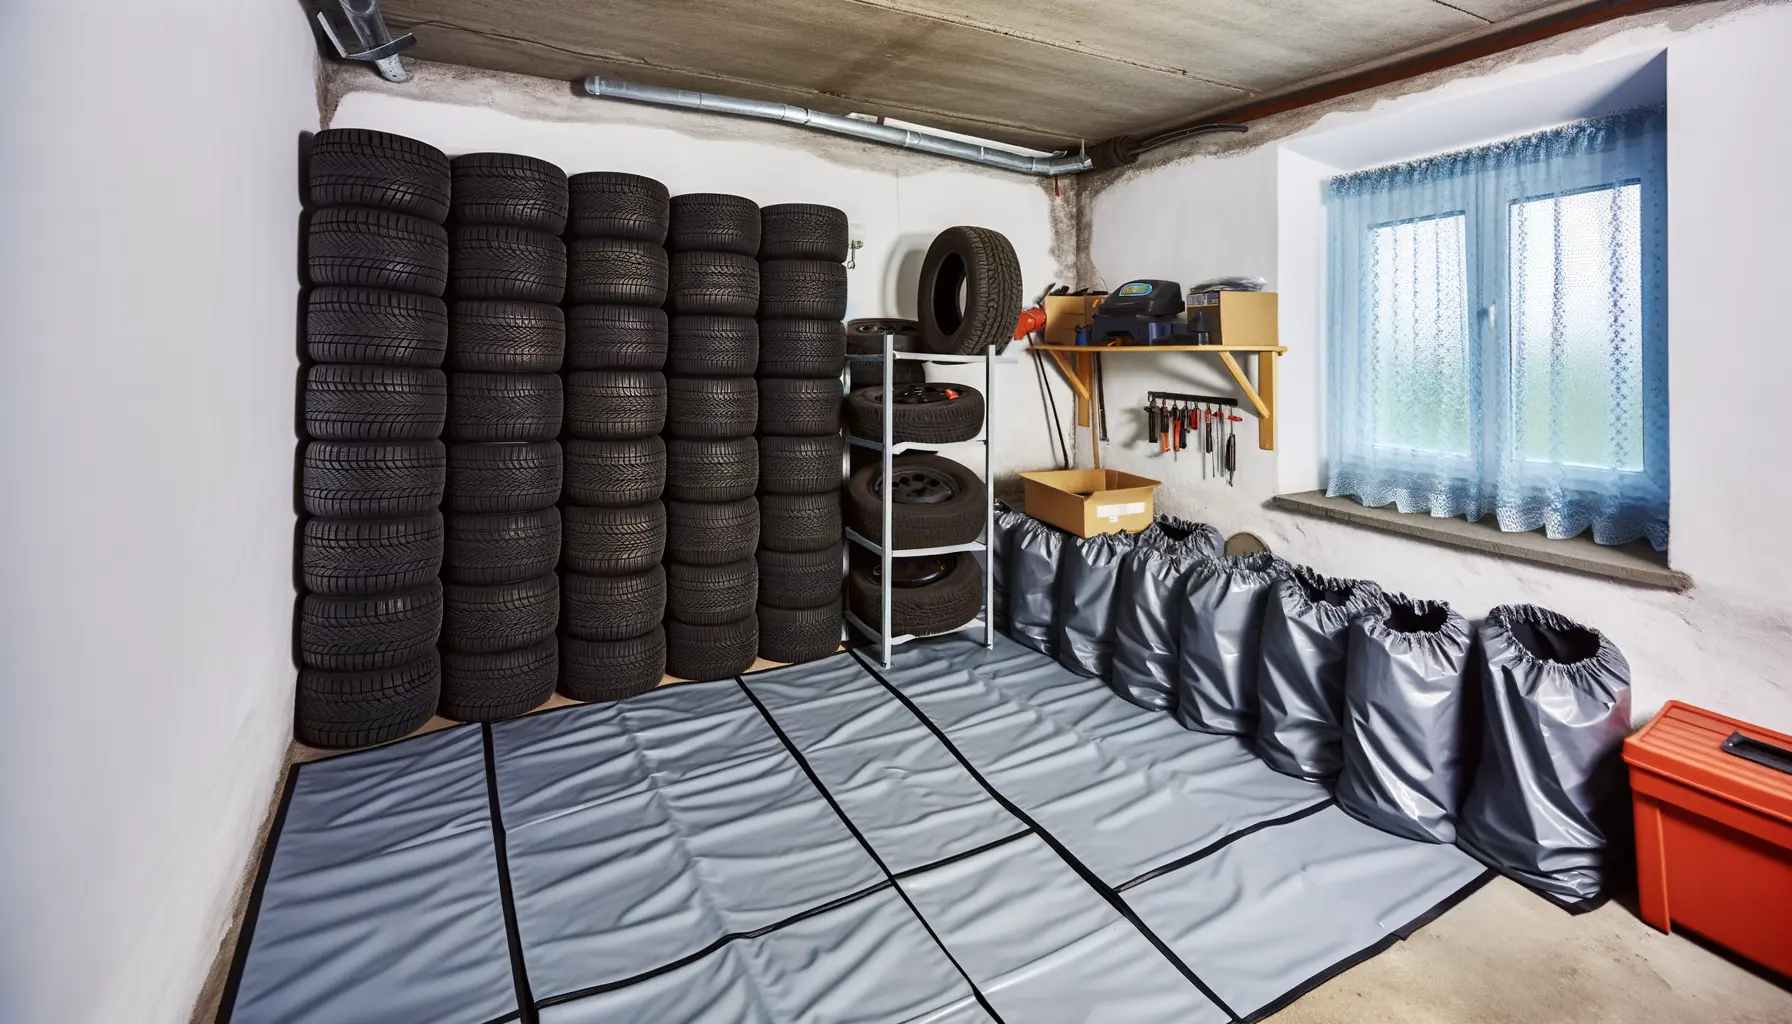 Organisierte Lagerung von Reifen in Garage oder Keller